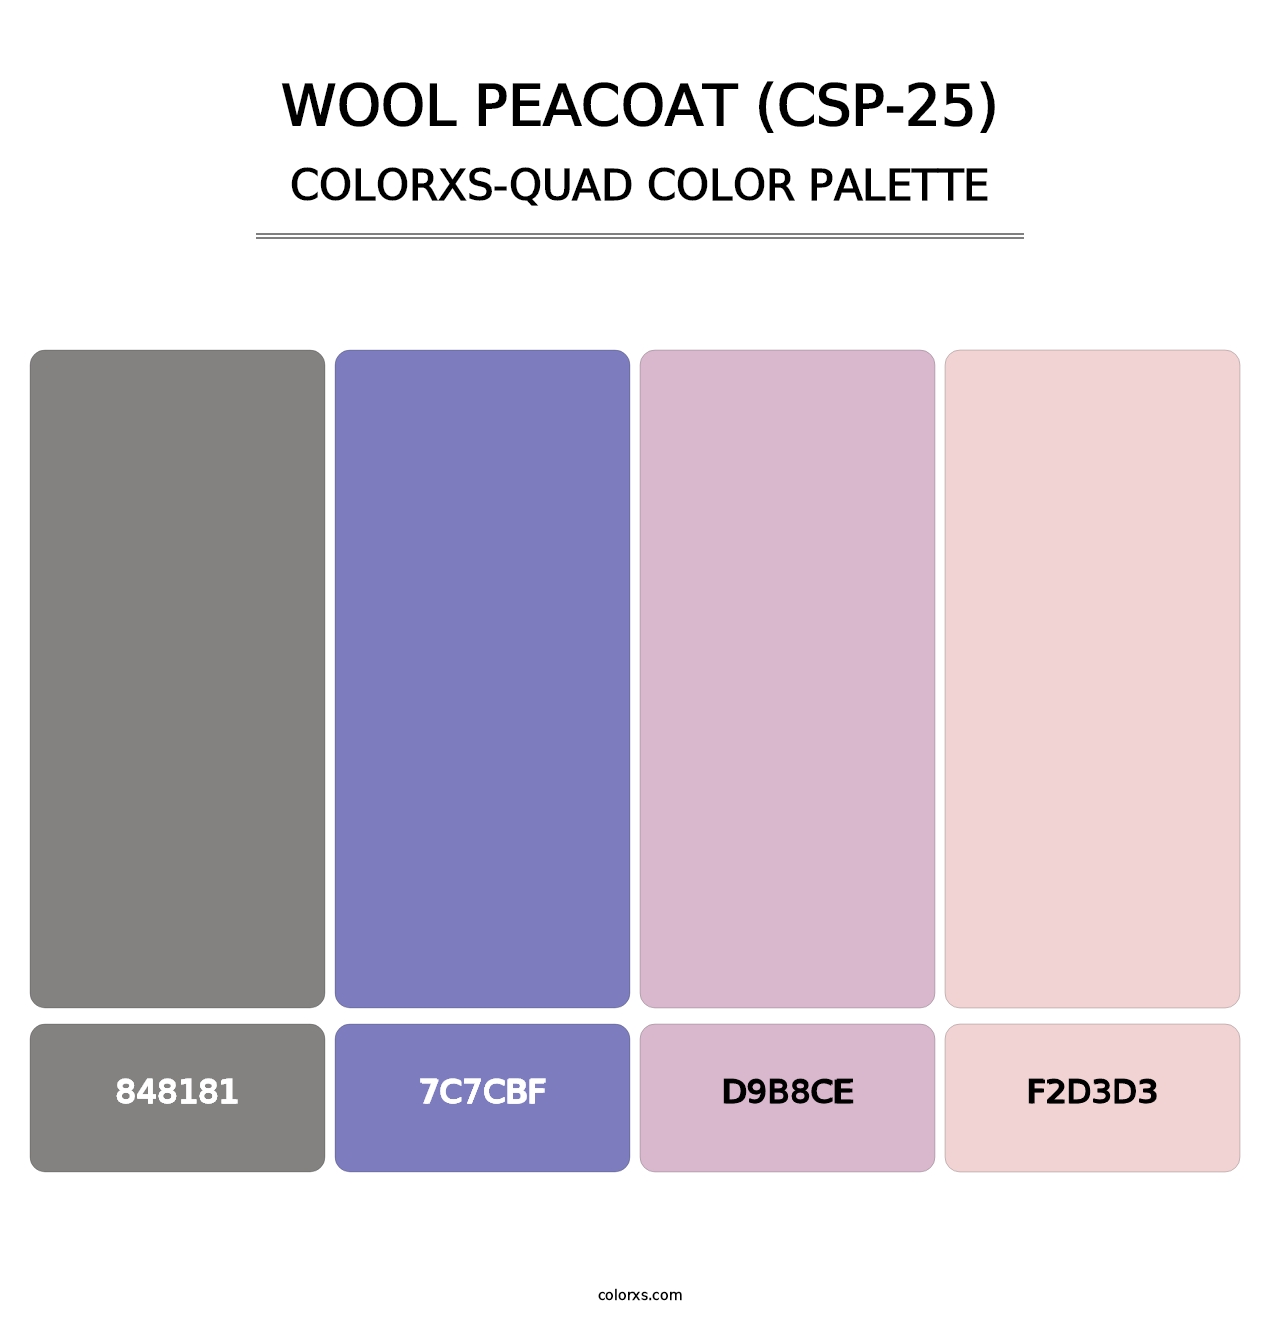 Wool Peacoat (CSP-25) - Colorxs Quad Palette